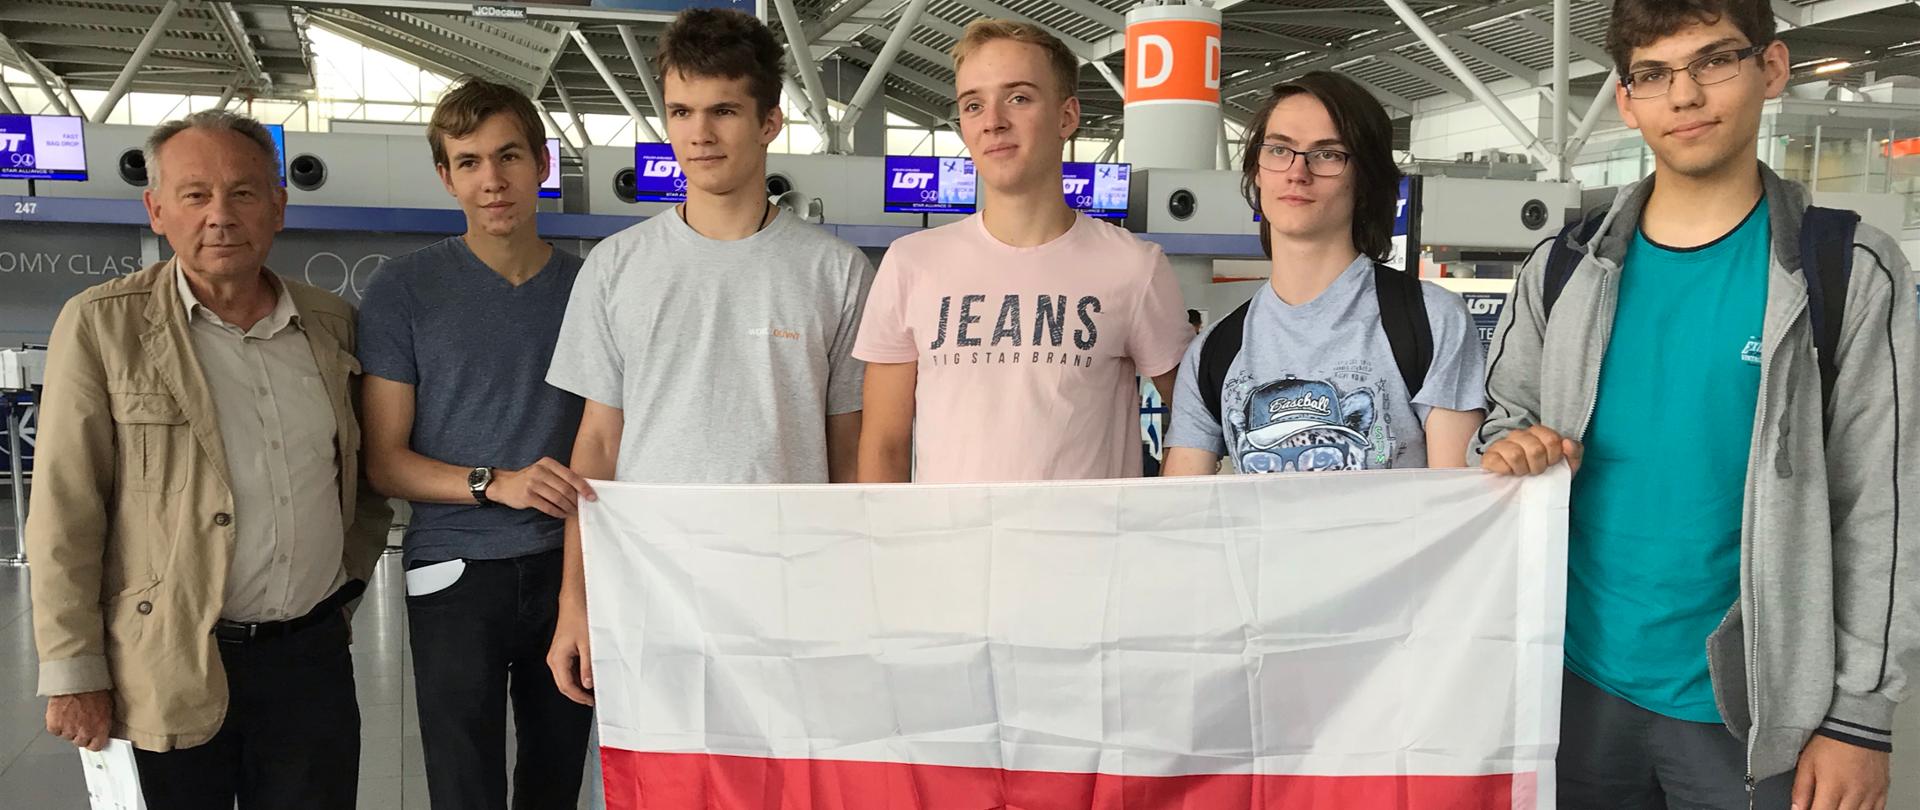 Polscy uczniowie z medalami na Międzynarodowej Olimpiadzie Fizycznej (IPhO 2019)